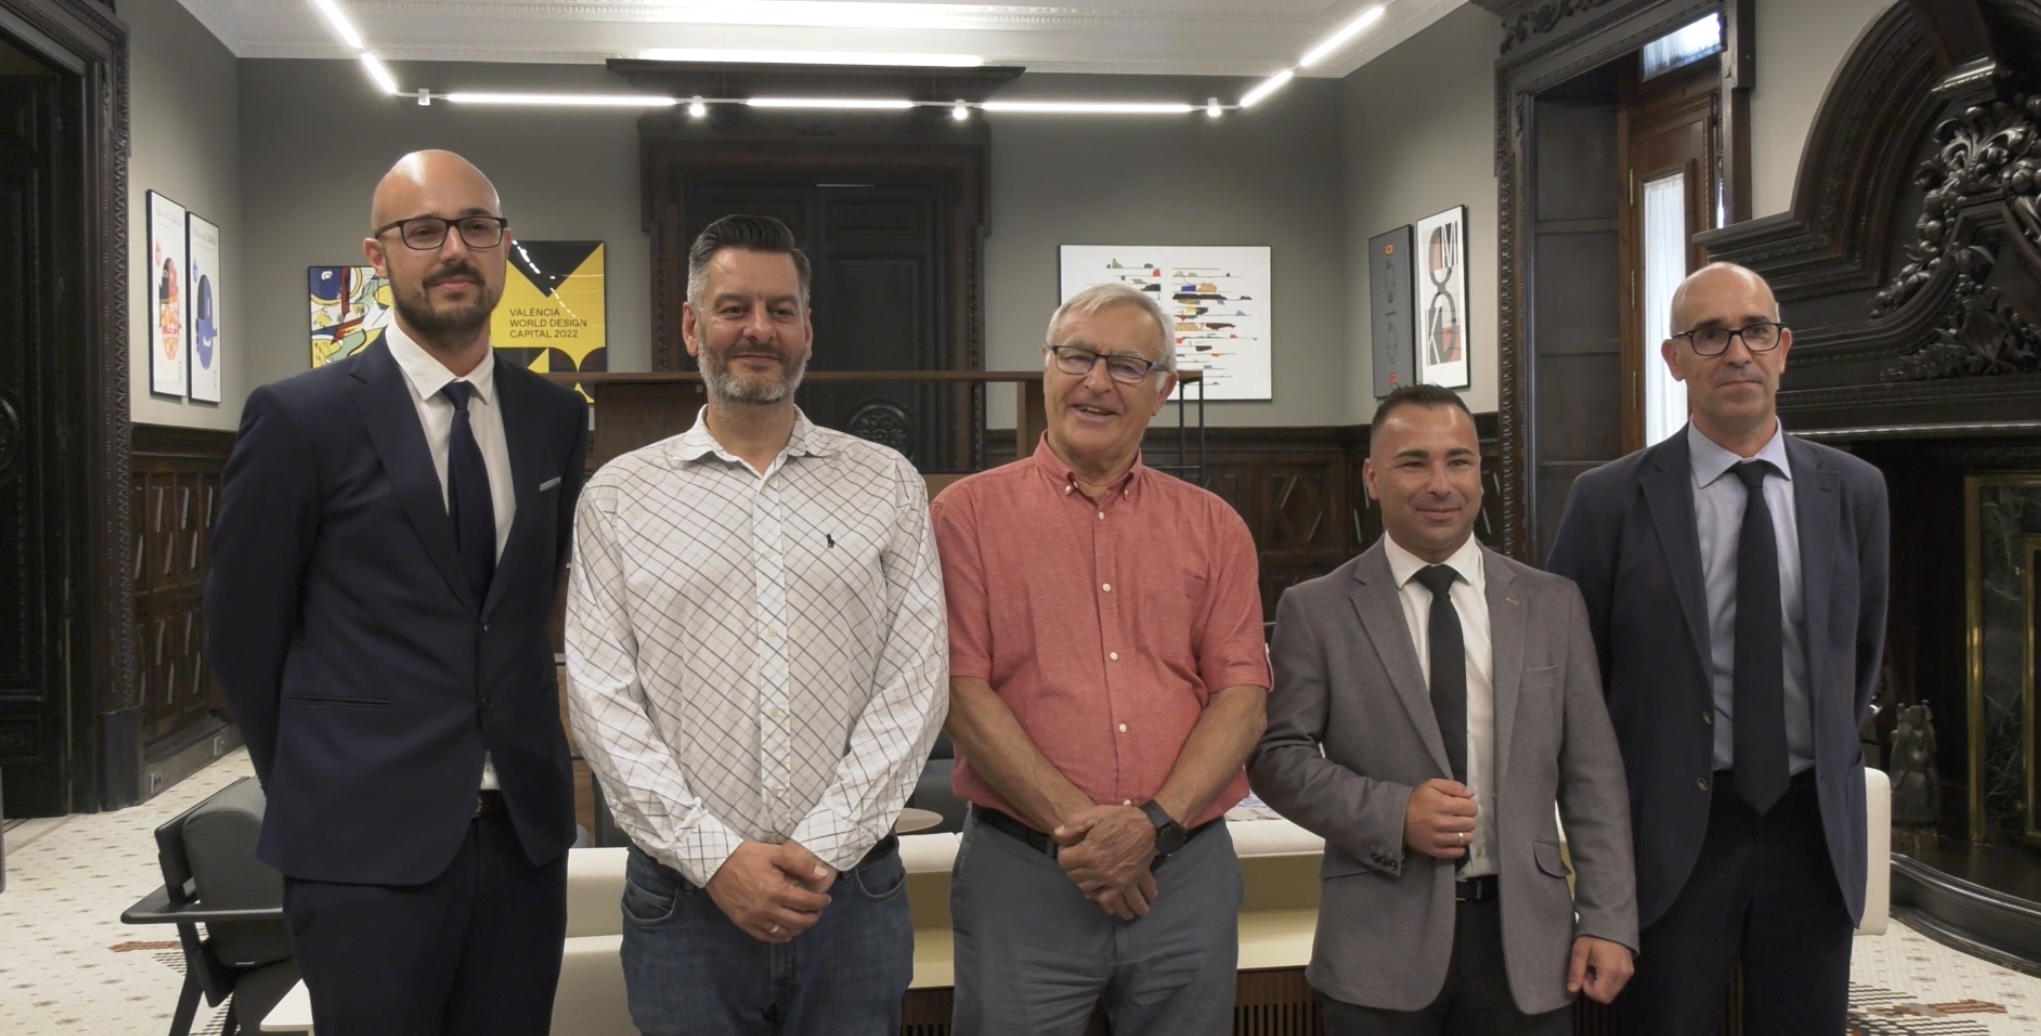 Semana Santa Marinera meets with Valencia City Council